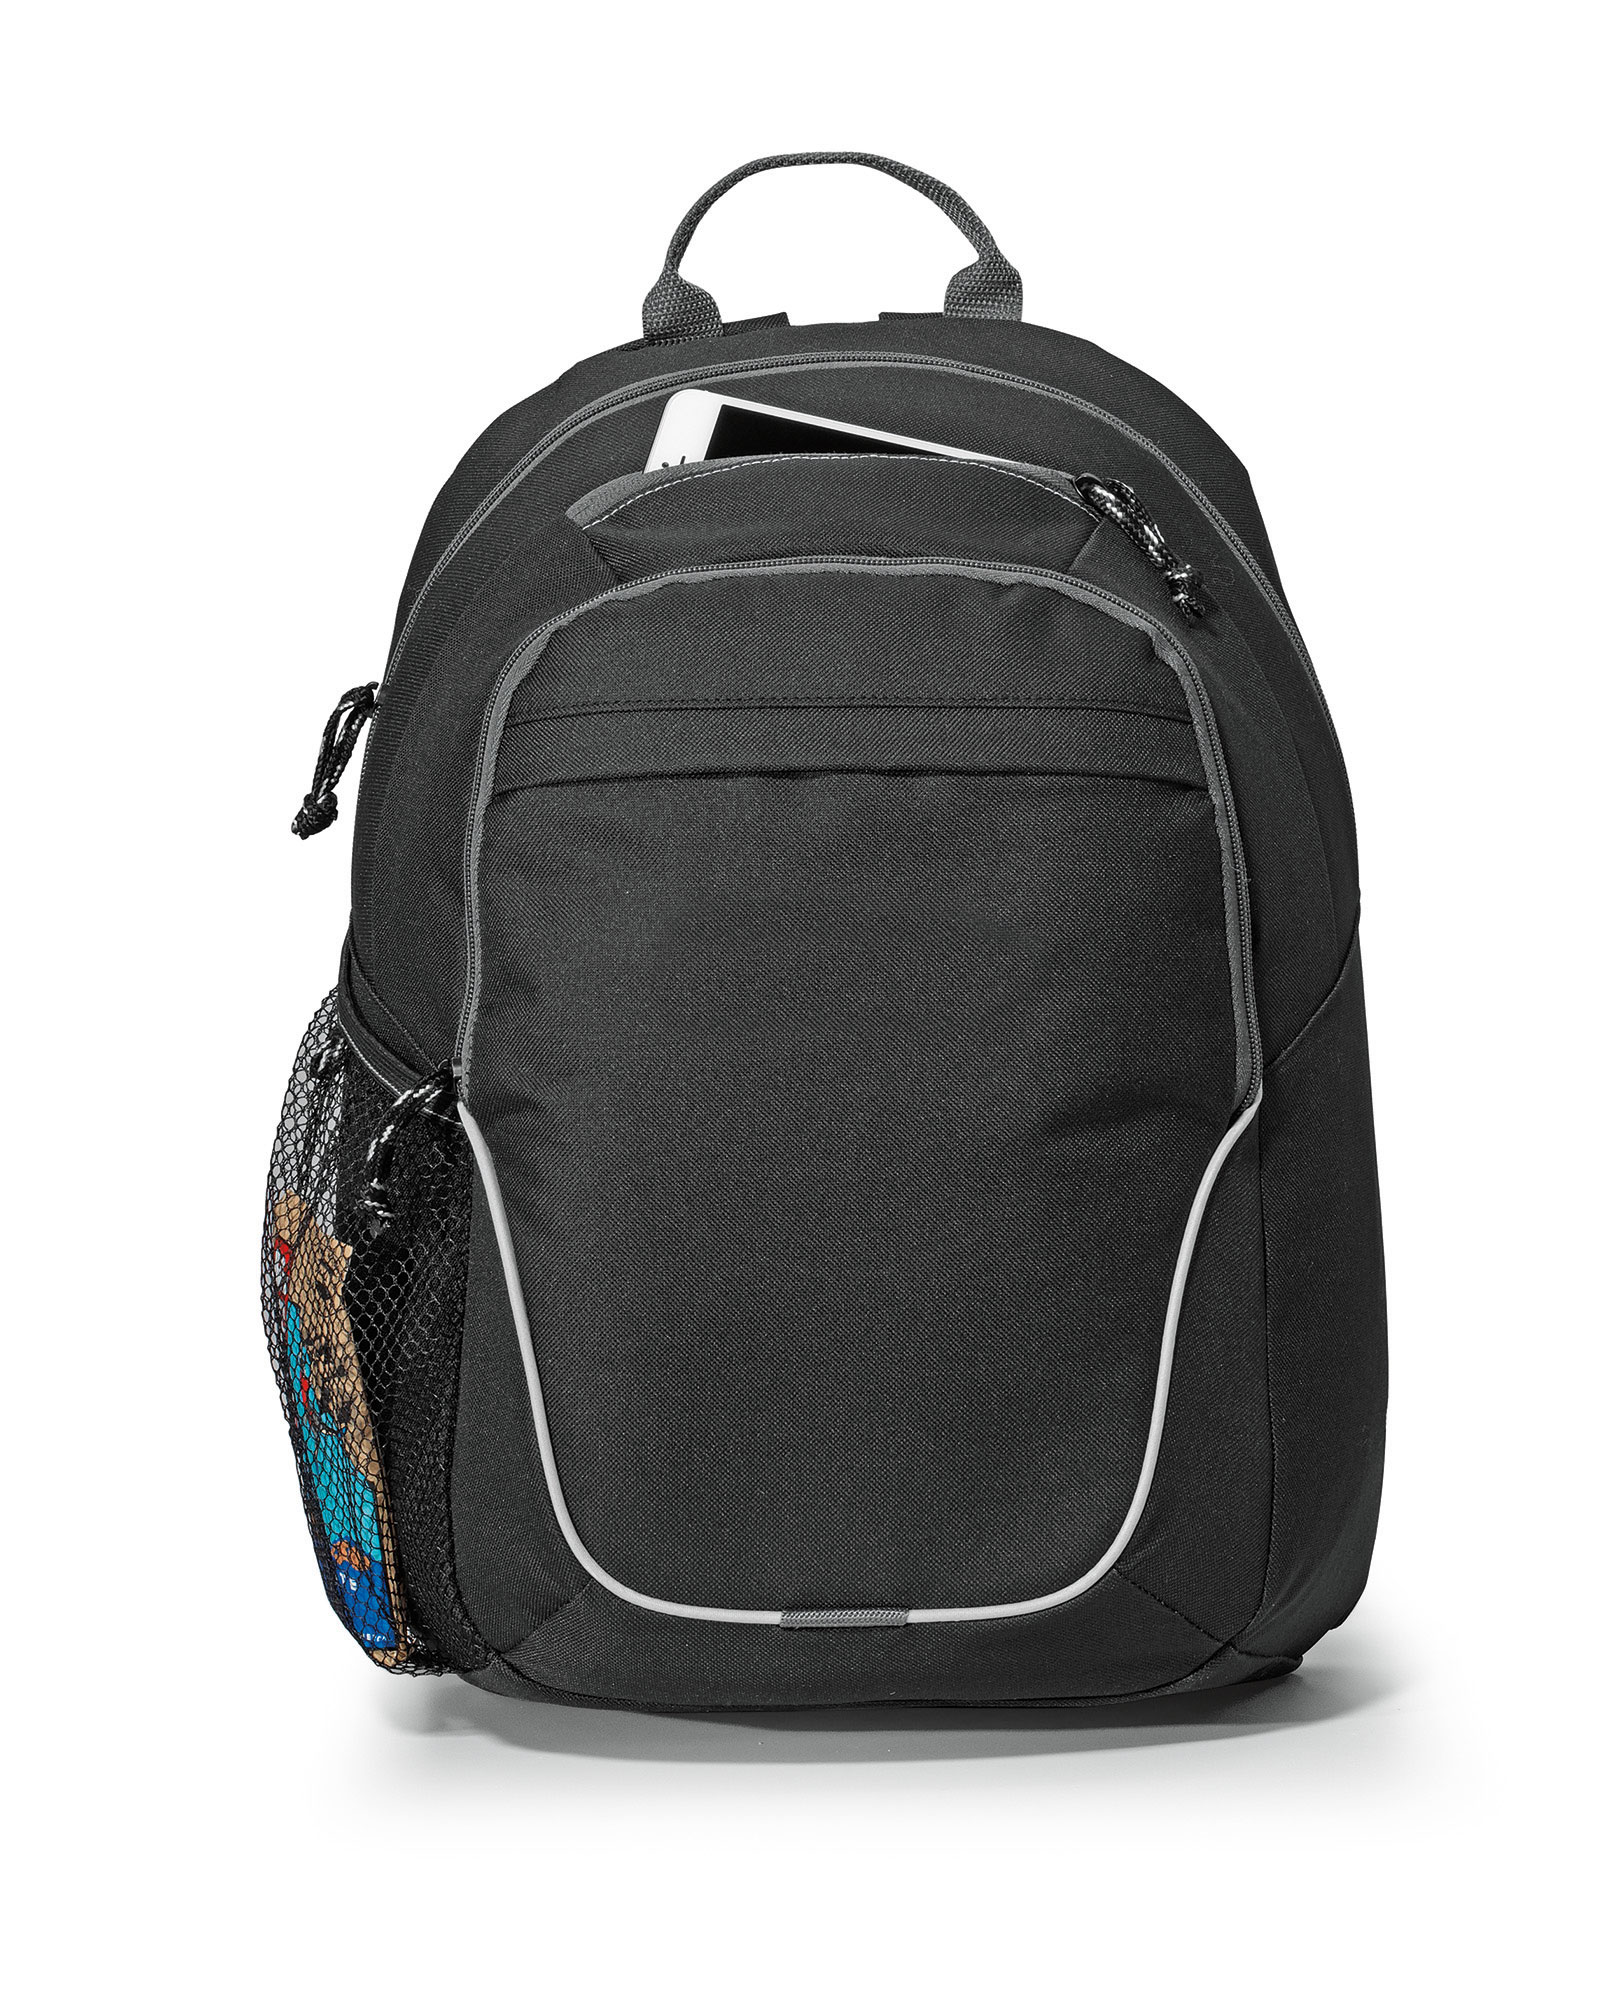 Gemline 5310 - Mission Backpack